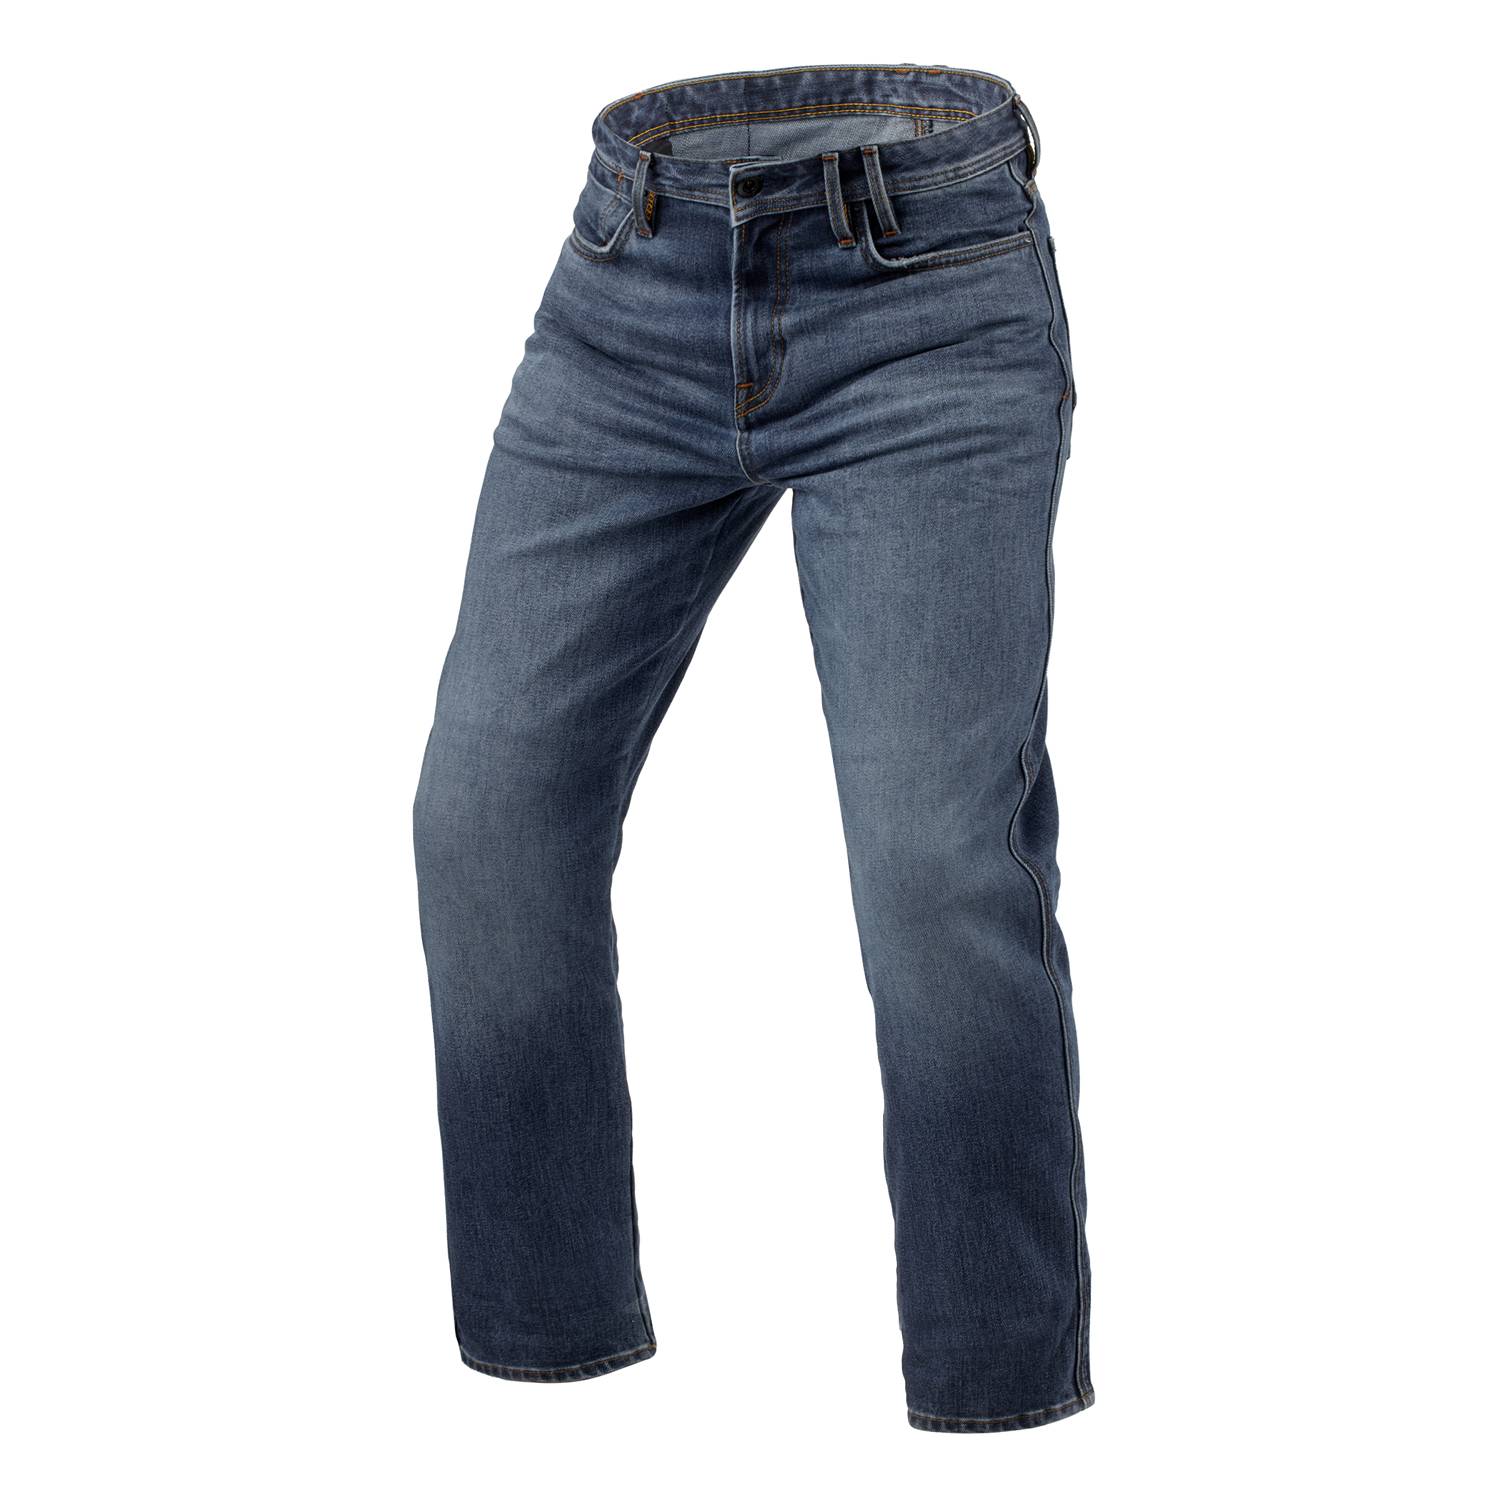 Image of REV'IT! Jeans Lombard 3 RF Mid Blue Stone L32 Motorcycle Jeans Size L32/W31 EN